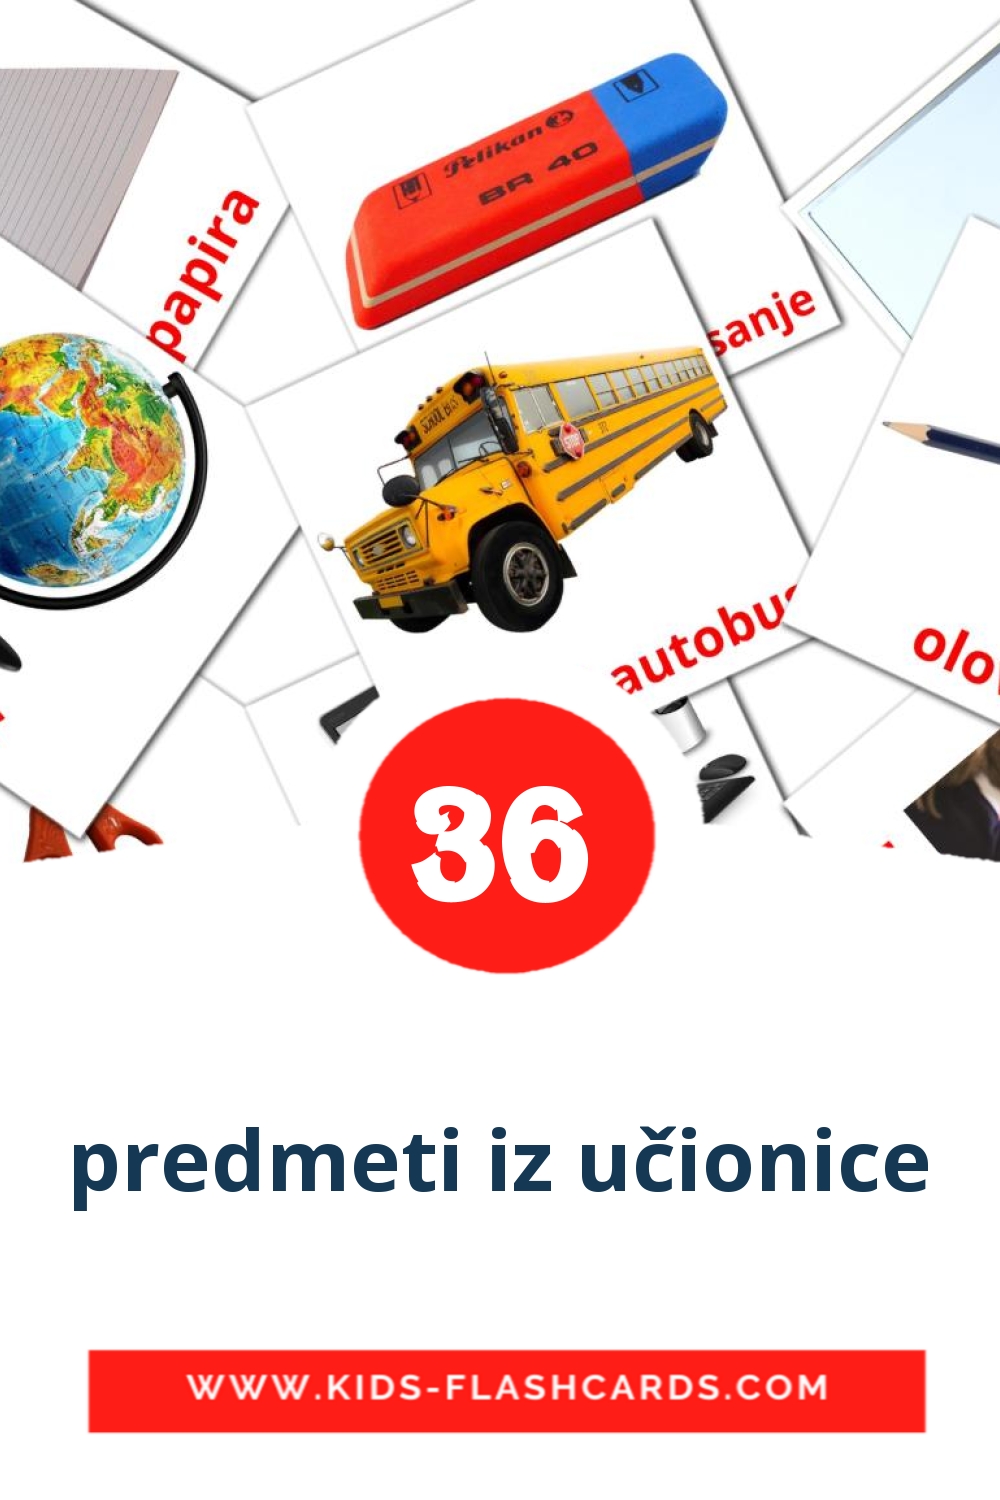 36 tarjetas didacticas de predmeti iz učionice para el jardín de infancia en croata